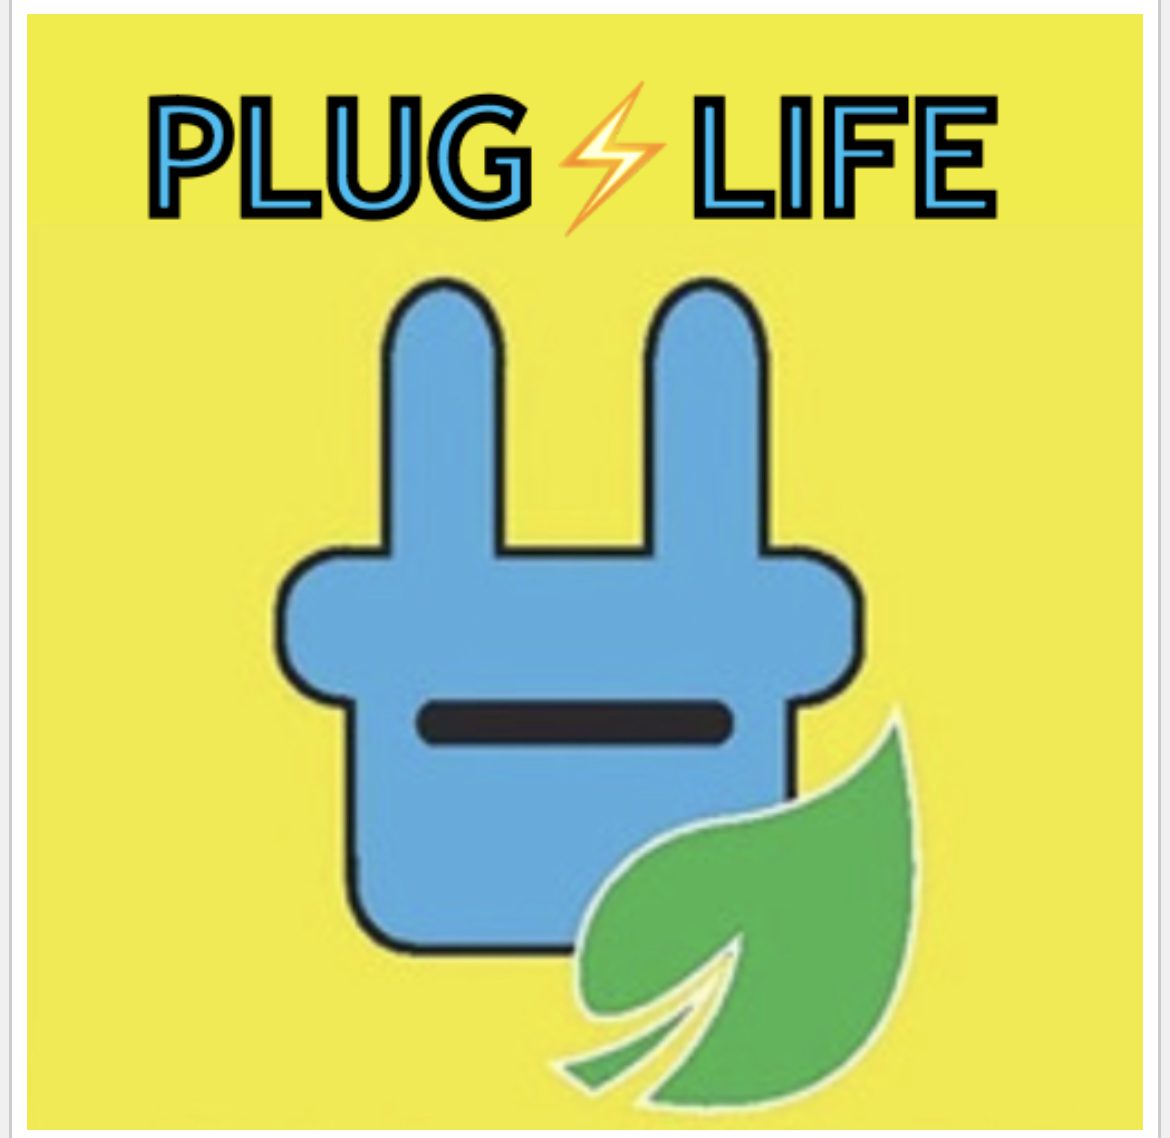 The Real Plug Life